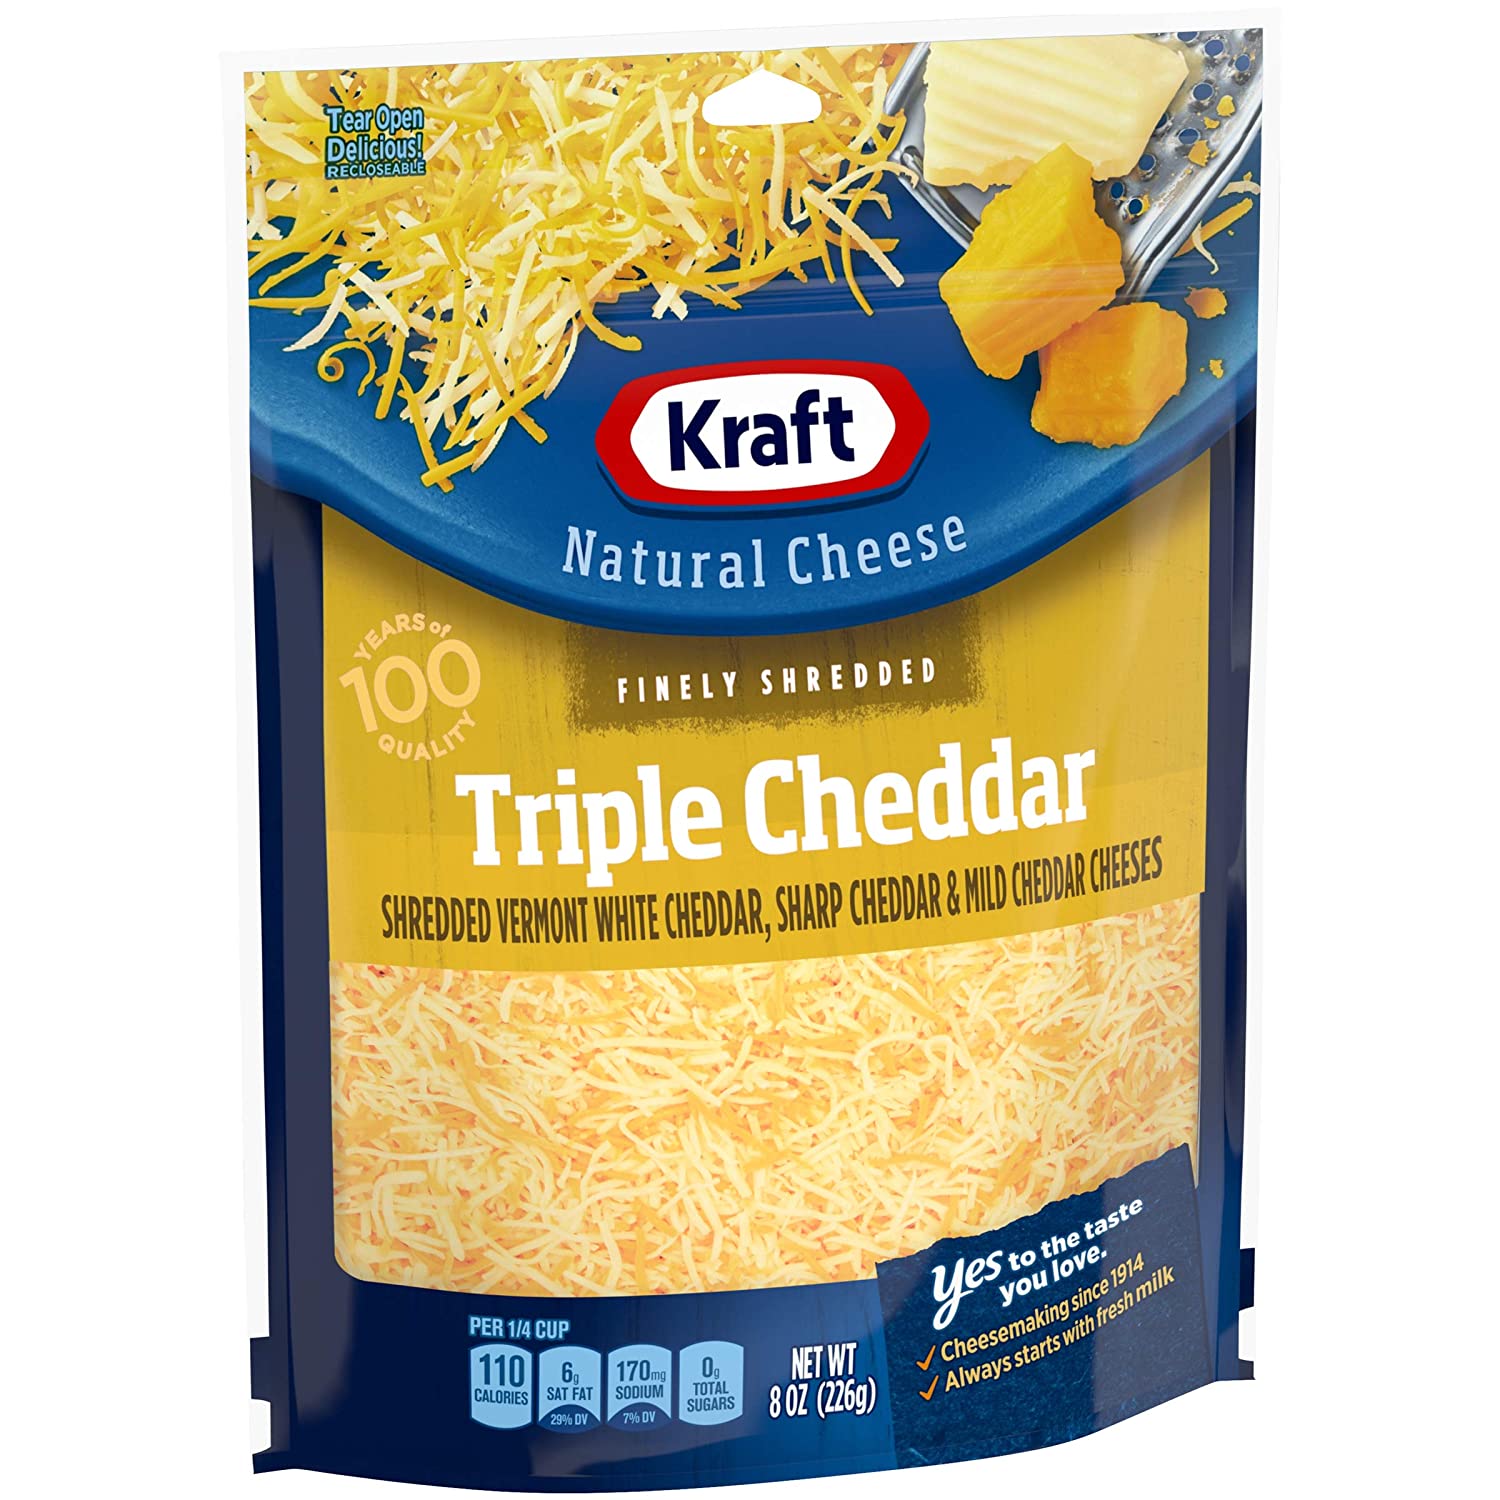 PHÔ MAI SỢI 3 LOẠI CHEDDAR Kraft Finely Shredded Natural Triple Cheese, 226g (8 oz)